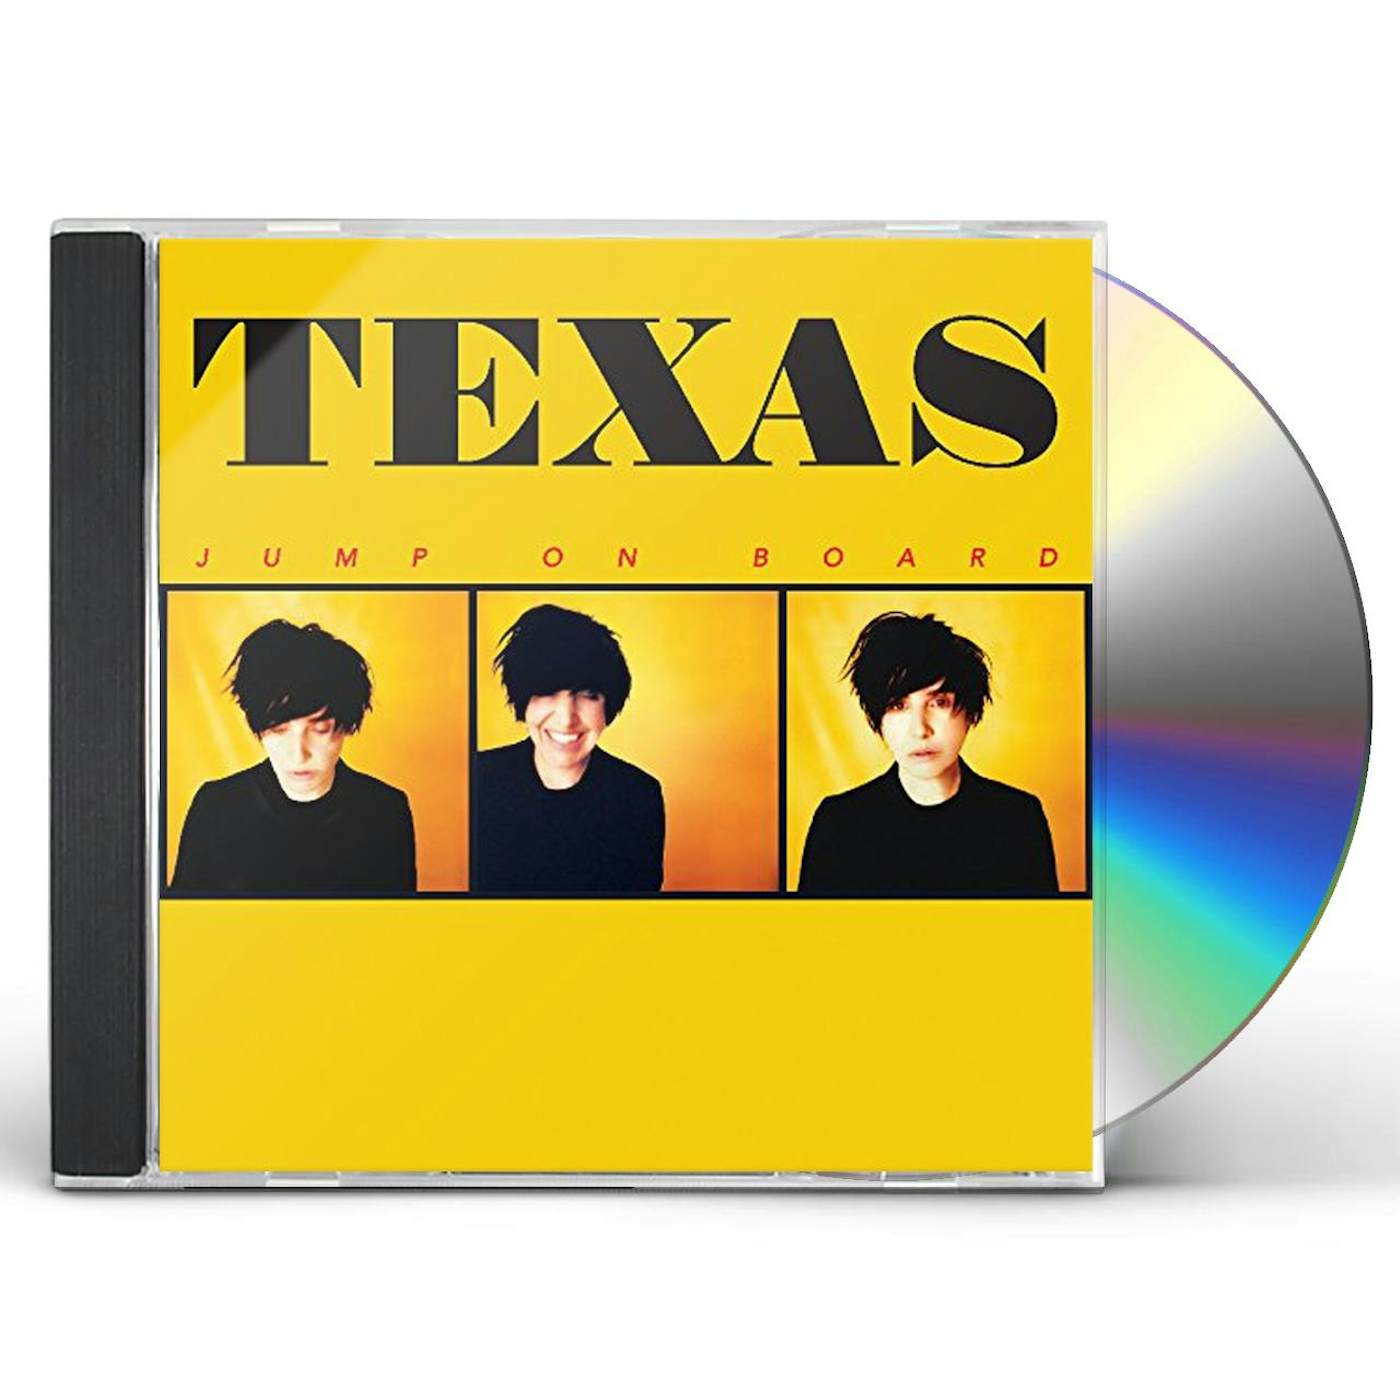 Texas JUMP ON BOARD CD